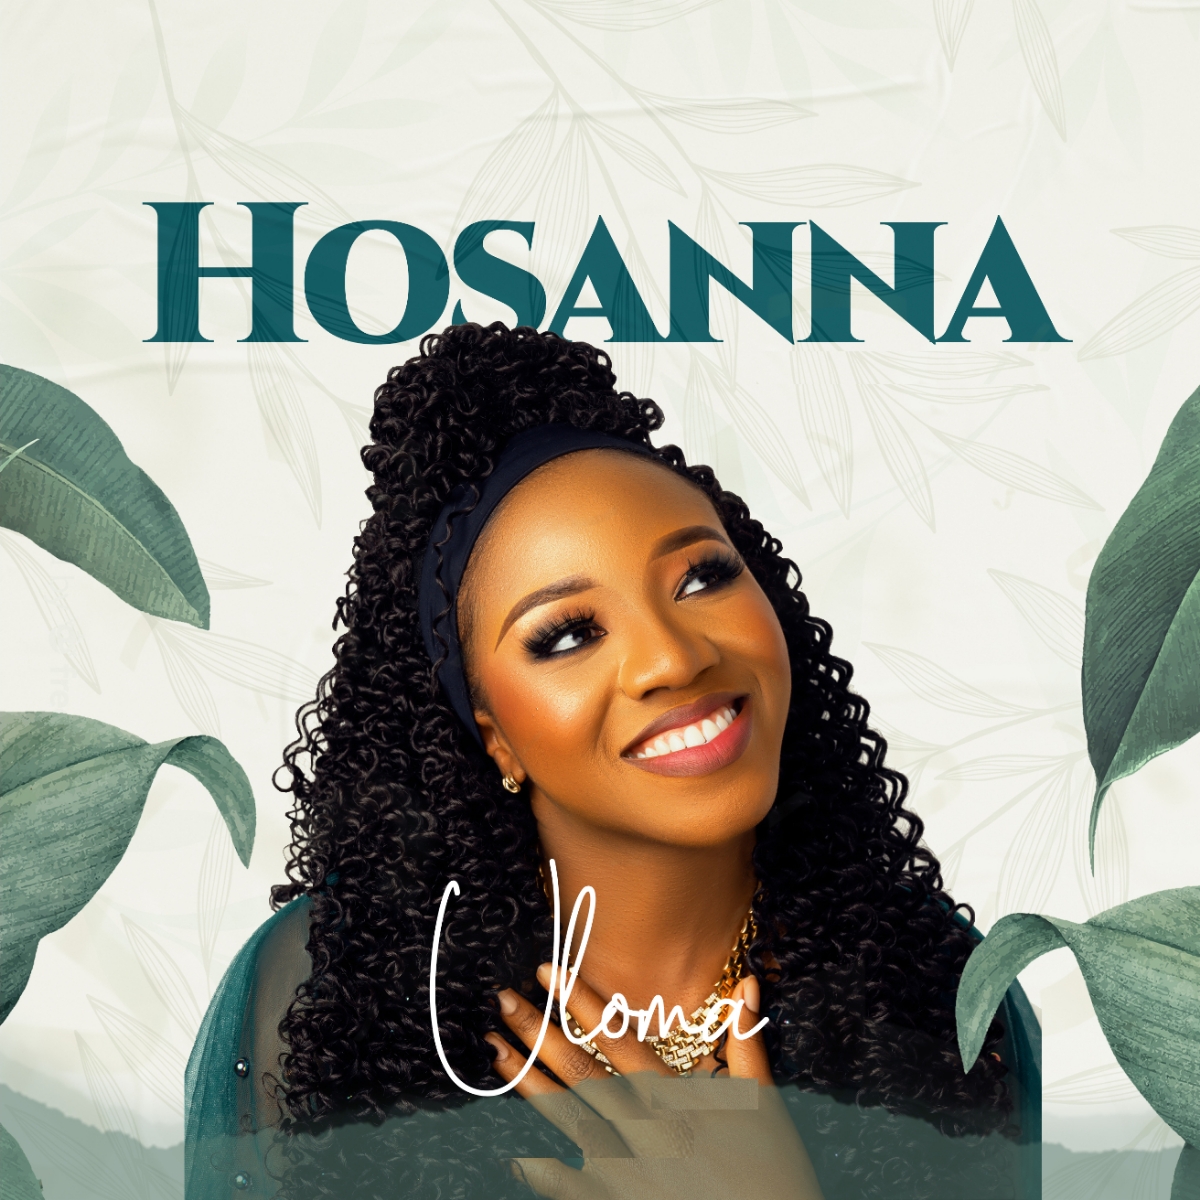 Hosanna by Uloma